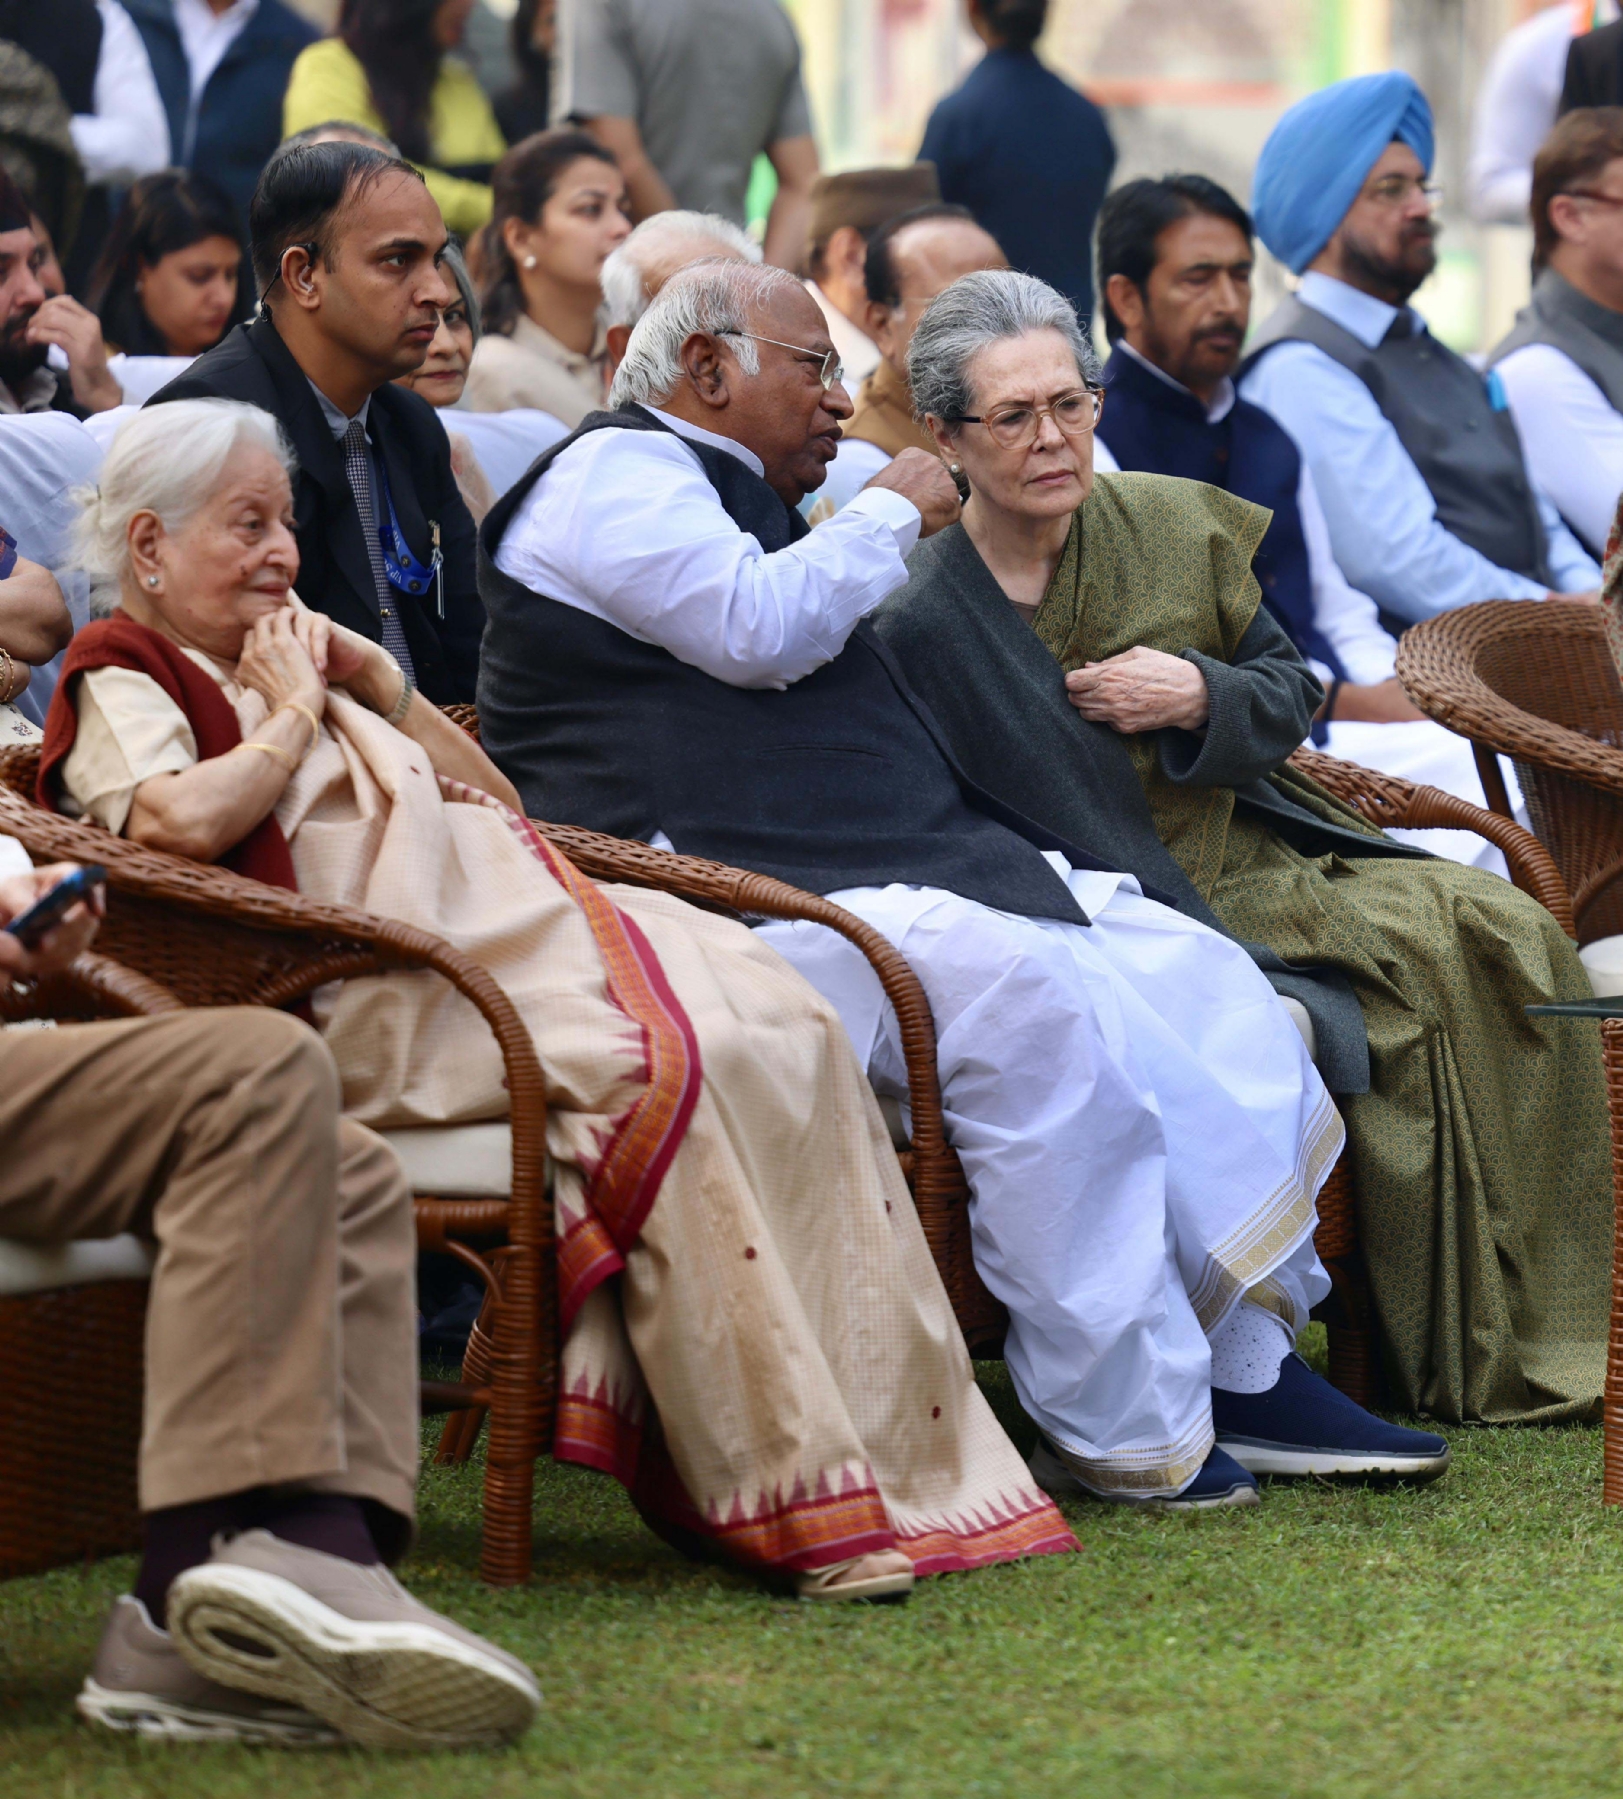 नई दिल्ली में रविवार 19 नवंबर को इंदिरा गांधी स्मारक न्यास द्वारा आयोजित कार्यक्रम के दौरान कांग्रेस अध्यक्ष मल्लिकार्जुन खड़गेऔर श्रीमती सोनिया गांधी सहित कांग्रेस के वरिष्ठ नेता शामिल हुए।  हिन्दुस्थान समाचार/ फोटो गणेश बिष्ट